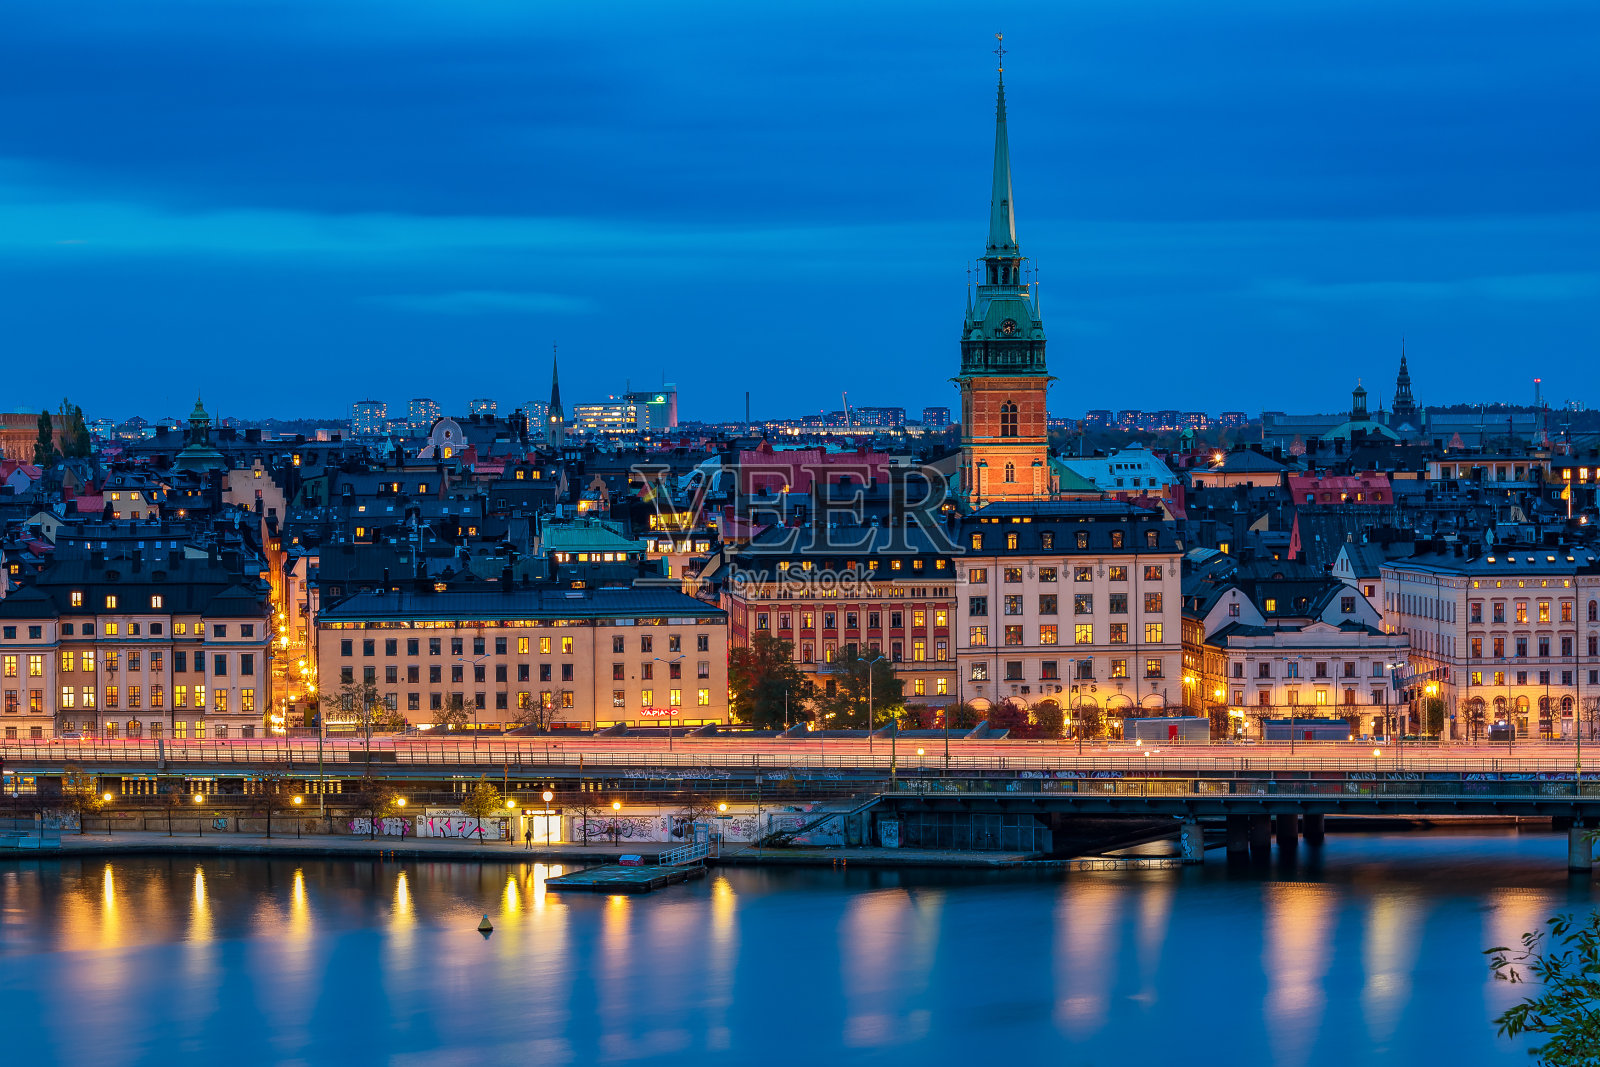 斯德哥尔摩老城格拉斯坦和瑞典的德国教堂的日落景观照片摄影图片